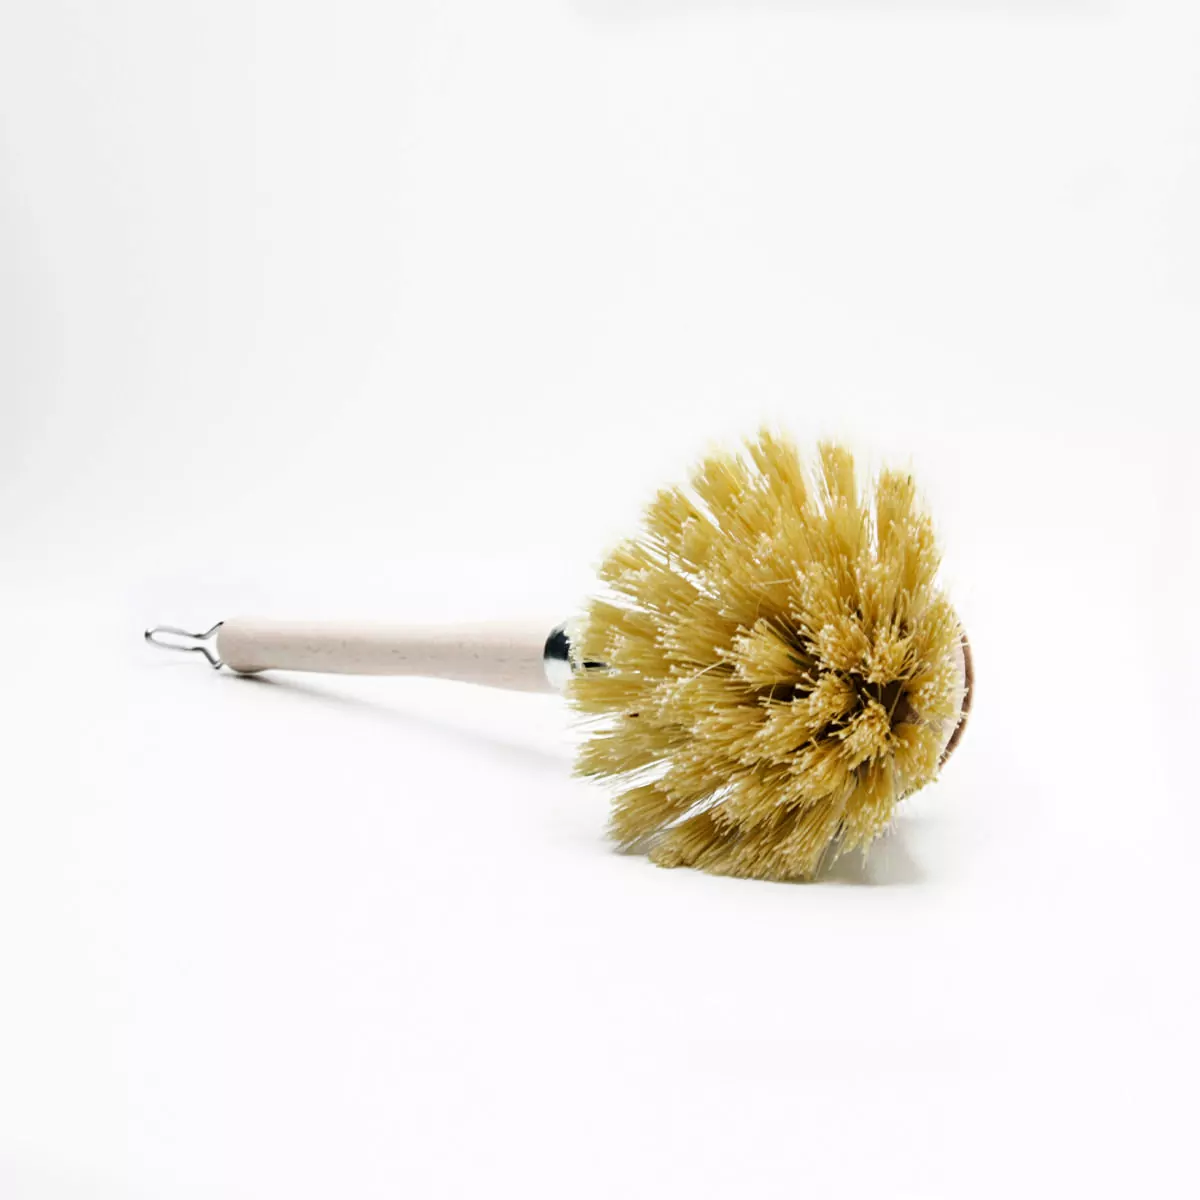 Cepillo para vajilla con mango – 4 cm